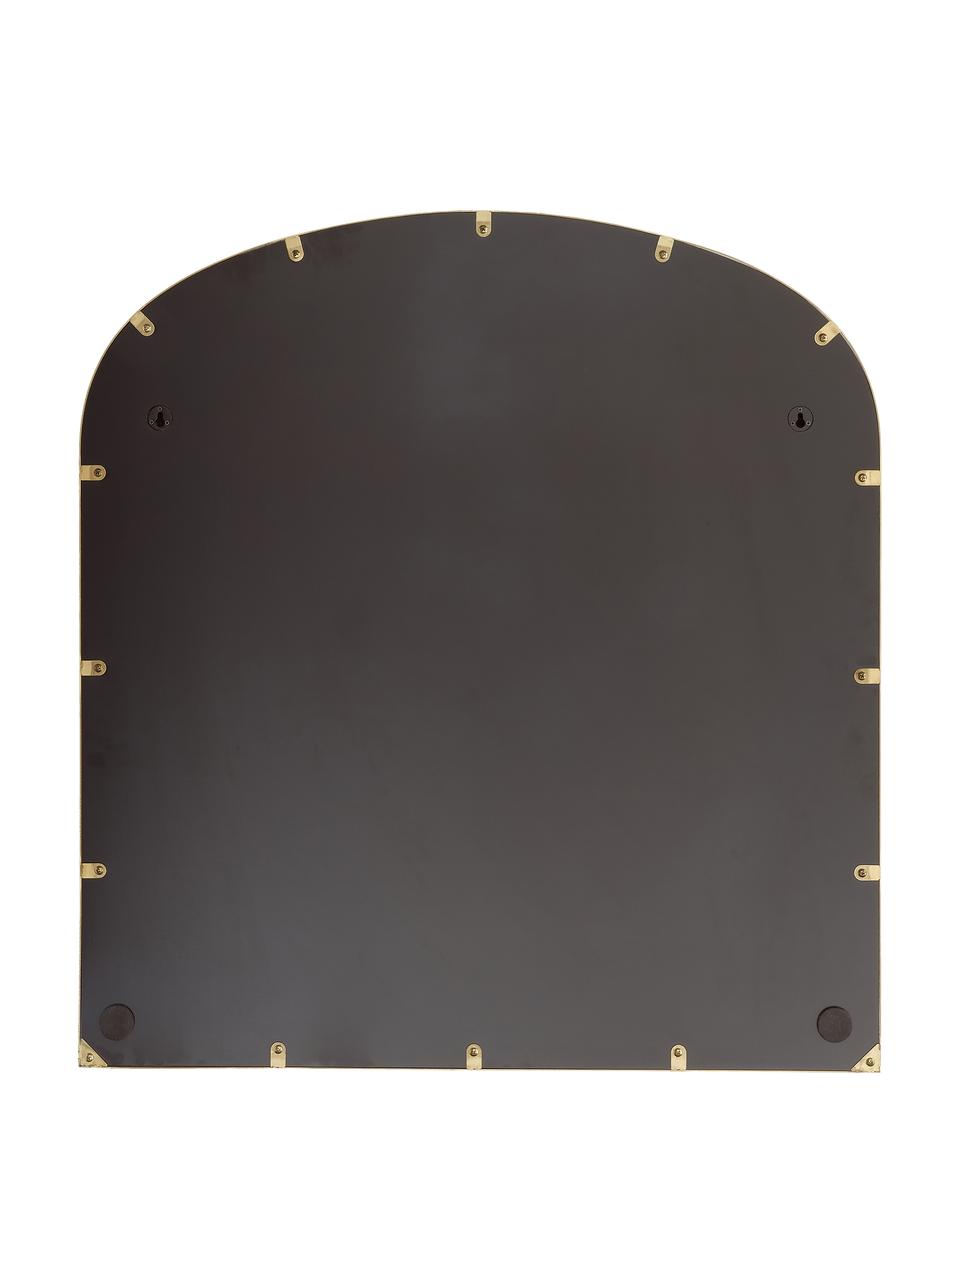 Wandspiegel Francis mit goldenem Metallrahmen, Rahmen: Metall, beschichtet, Rückseite: Mitteldichte Holzfaserpla, Spiegelfläche: Spiegelglas, Goldfarben, 80 x 85 cm